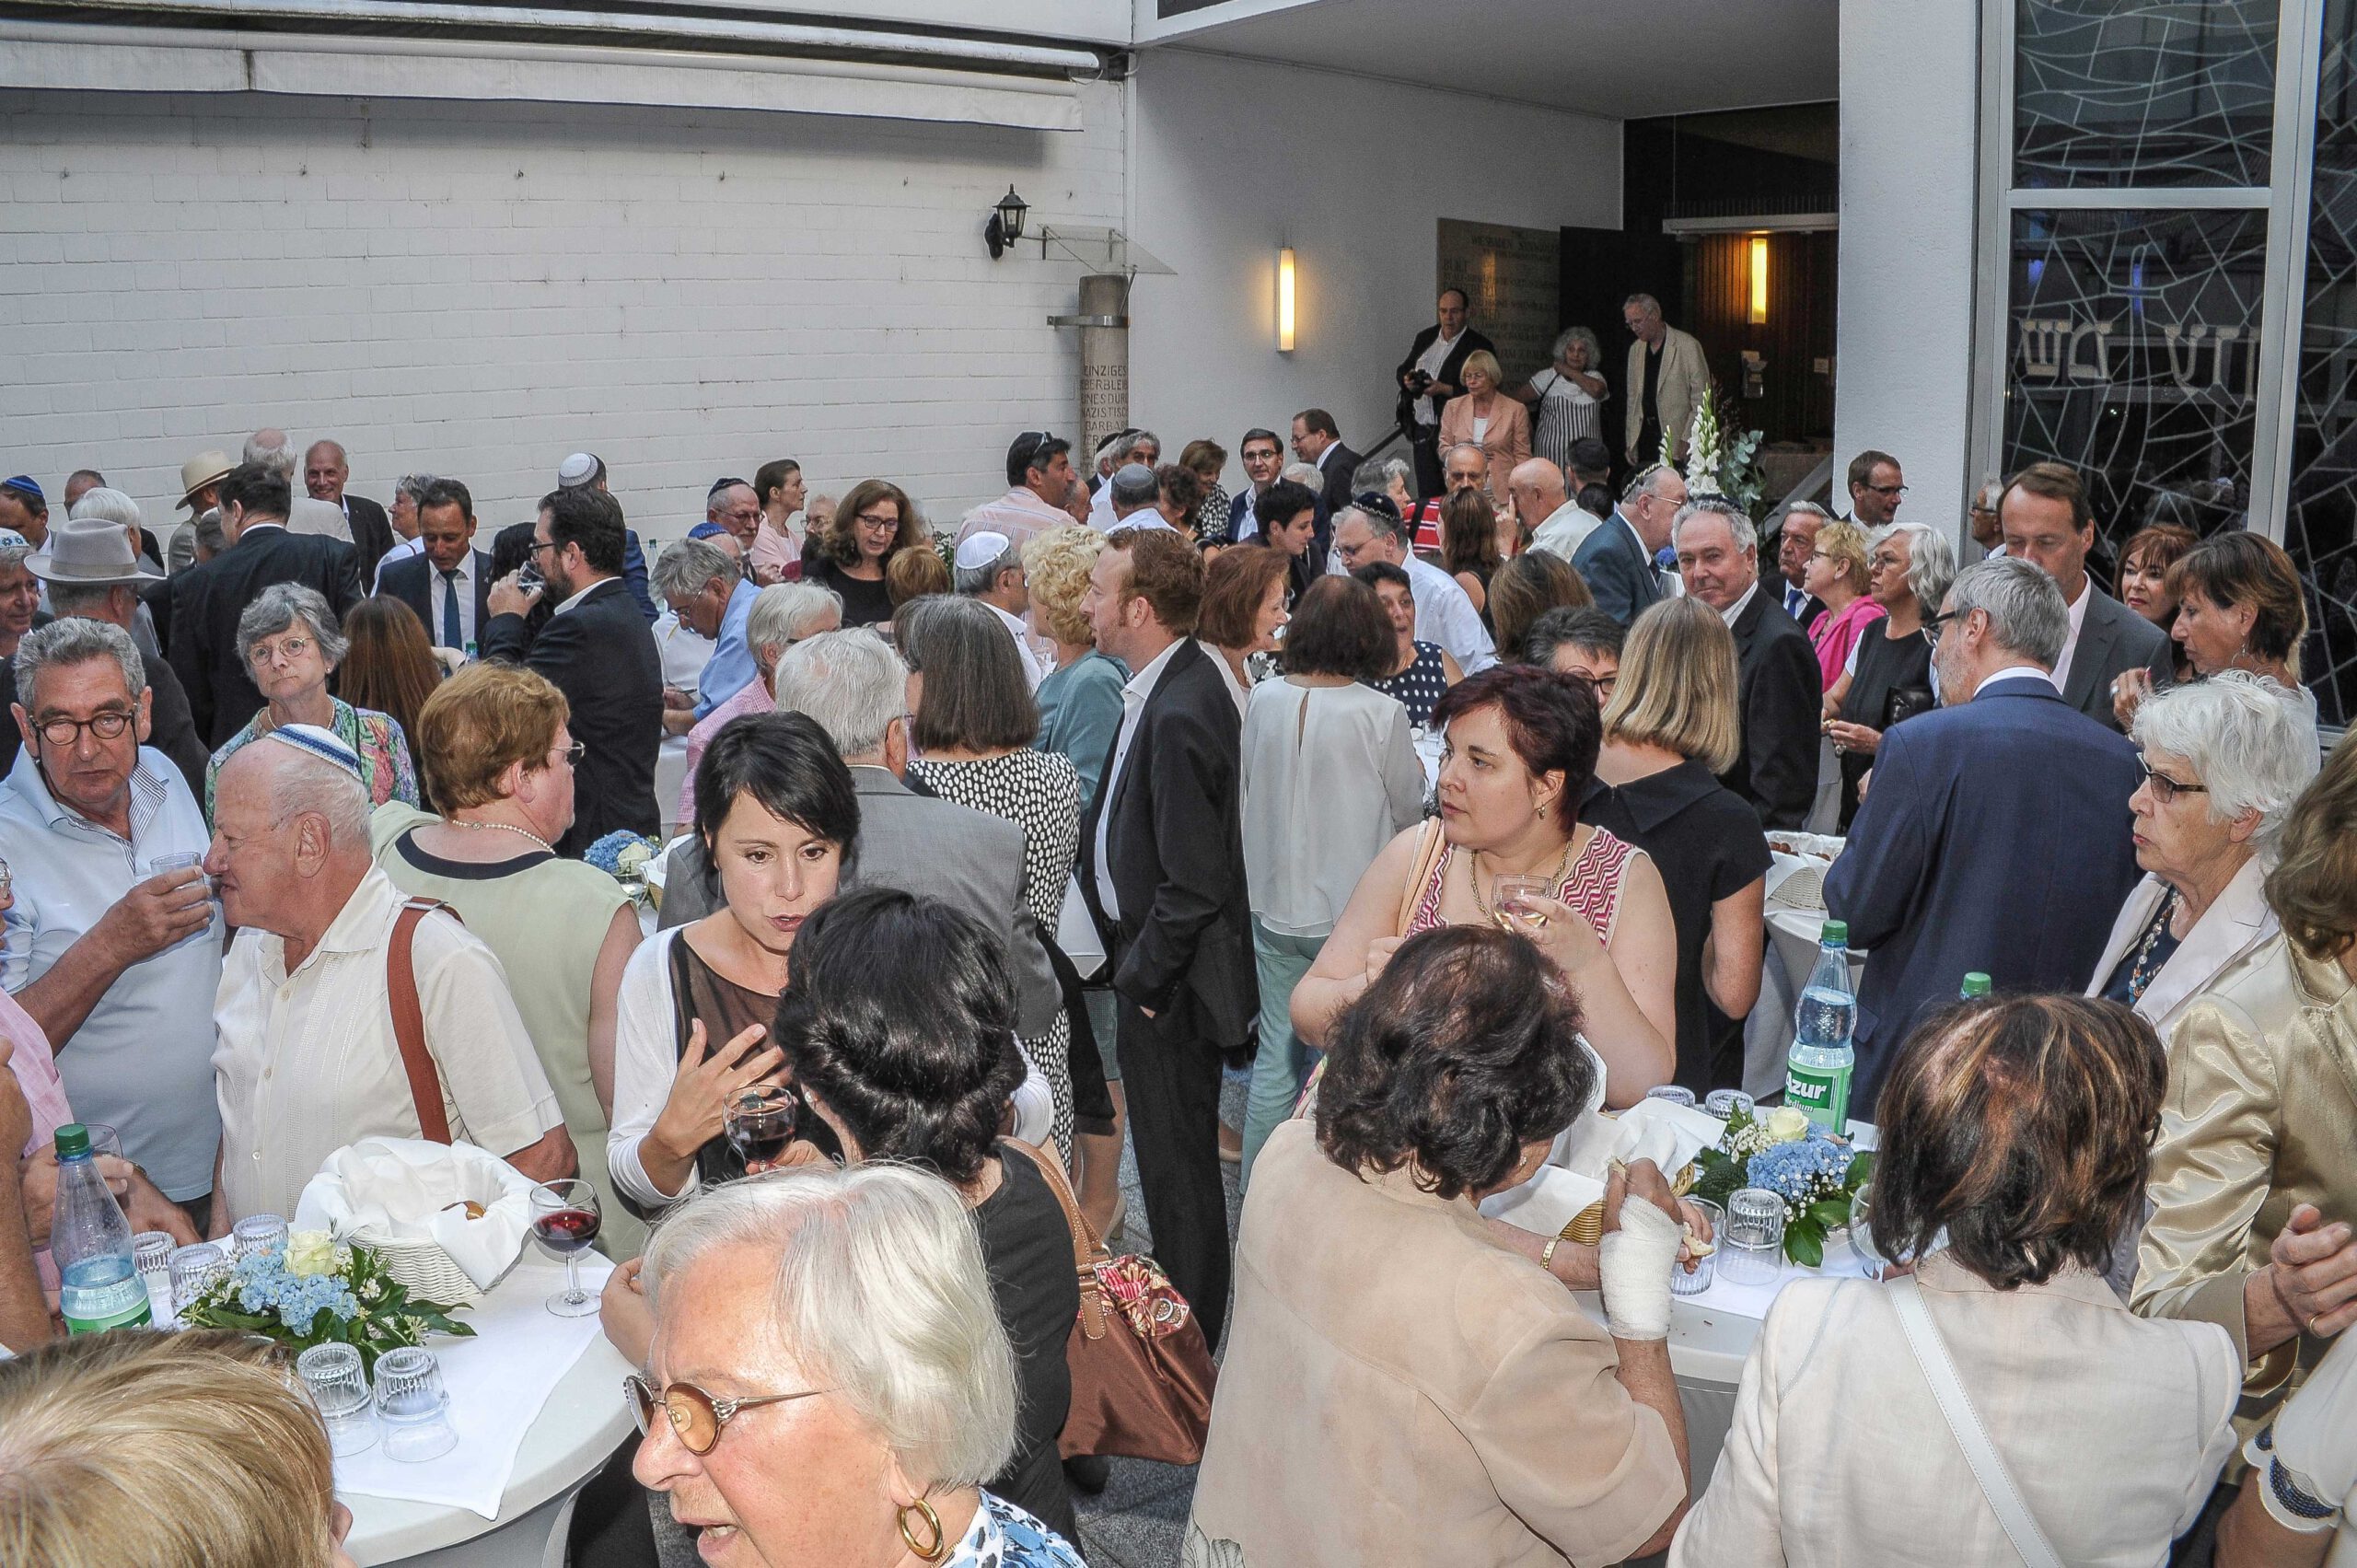 2016 : Célébrations à l'occasion du 70e anniversaire de la refondation de la communauté juive de Wiesbaden et de l'inauguration de la nouvelle synagogue il y a 50 ans. Photographe : Igor Eisenschtat. Collection de la communauté juive de Wiesbaden